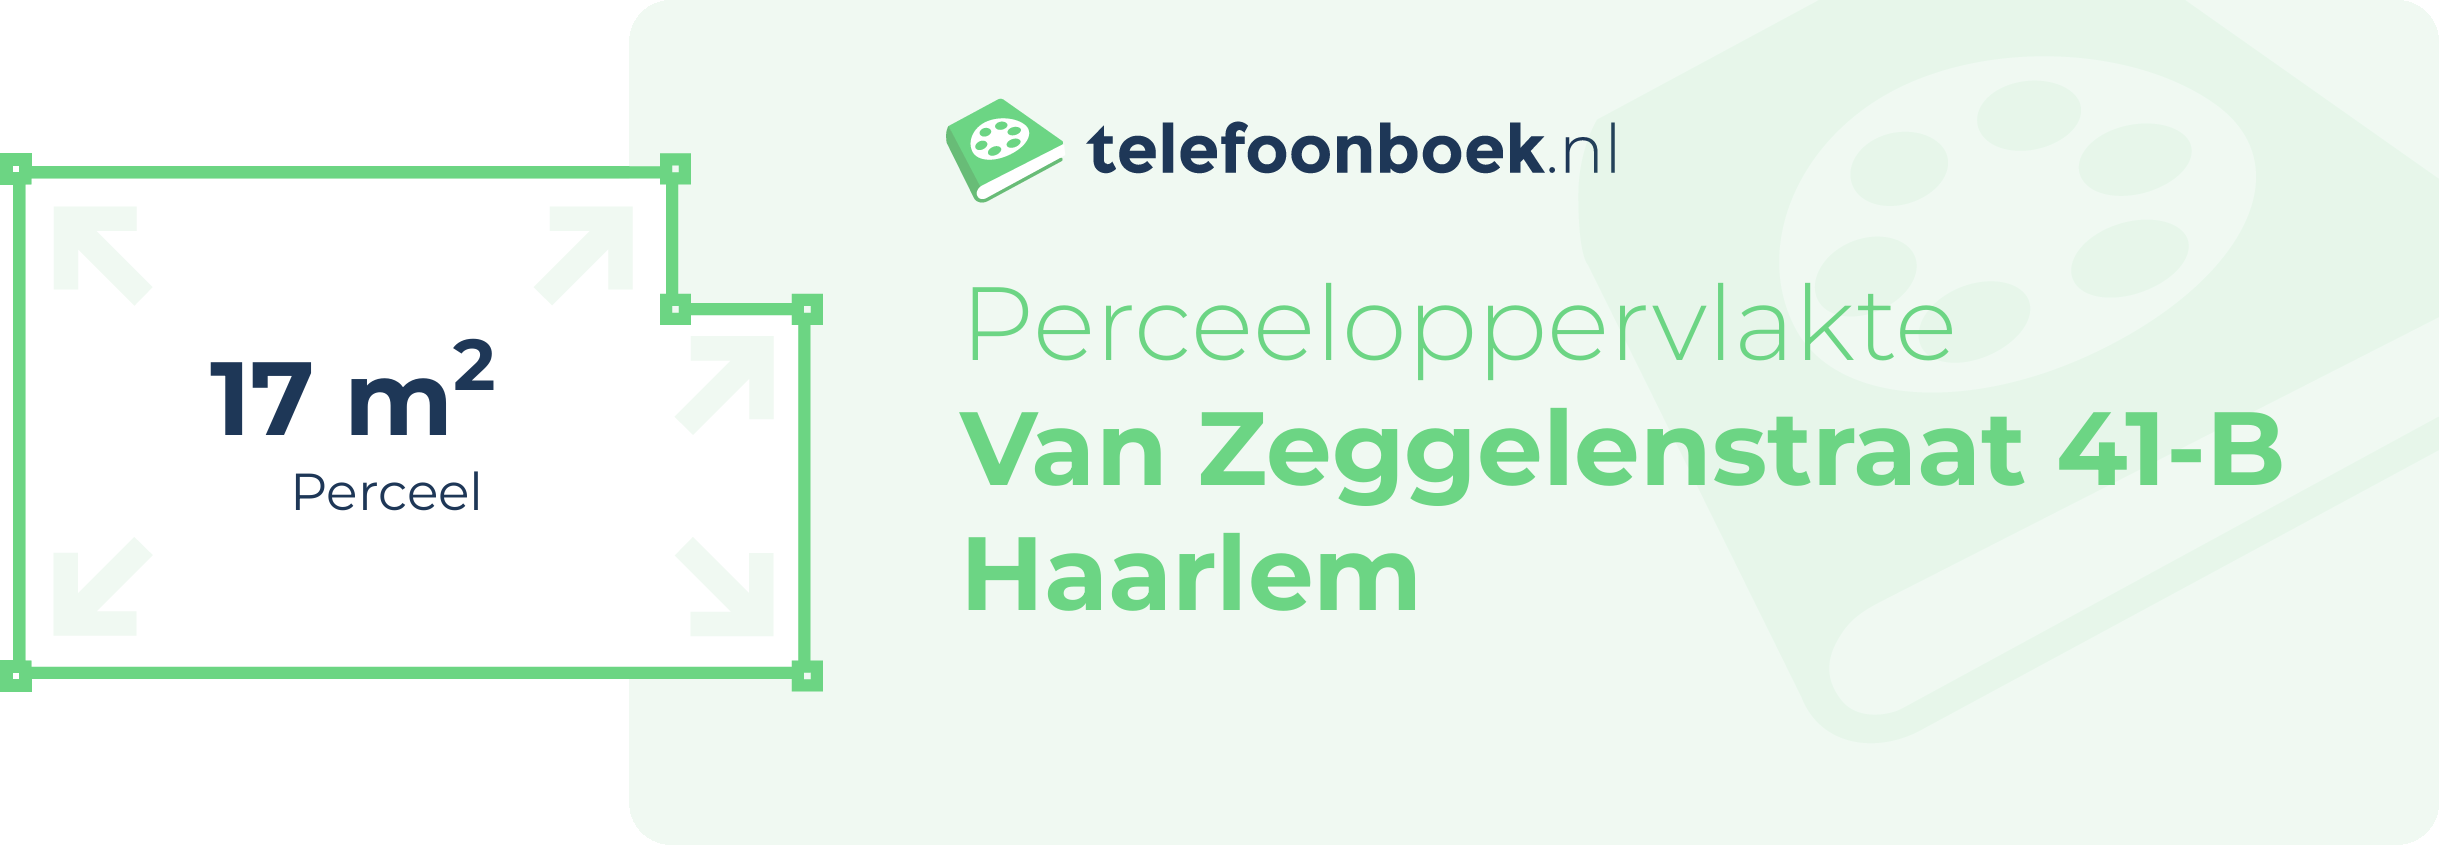 Perceeloppervlakte Van Zeggelenstraat 41-B Haarlem